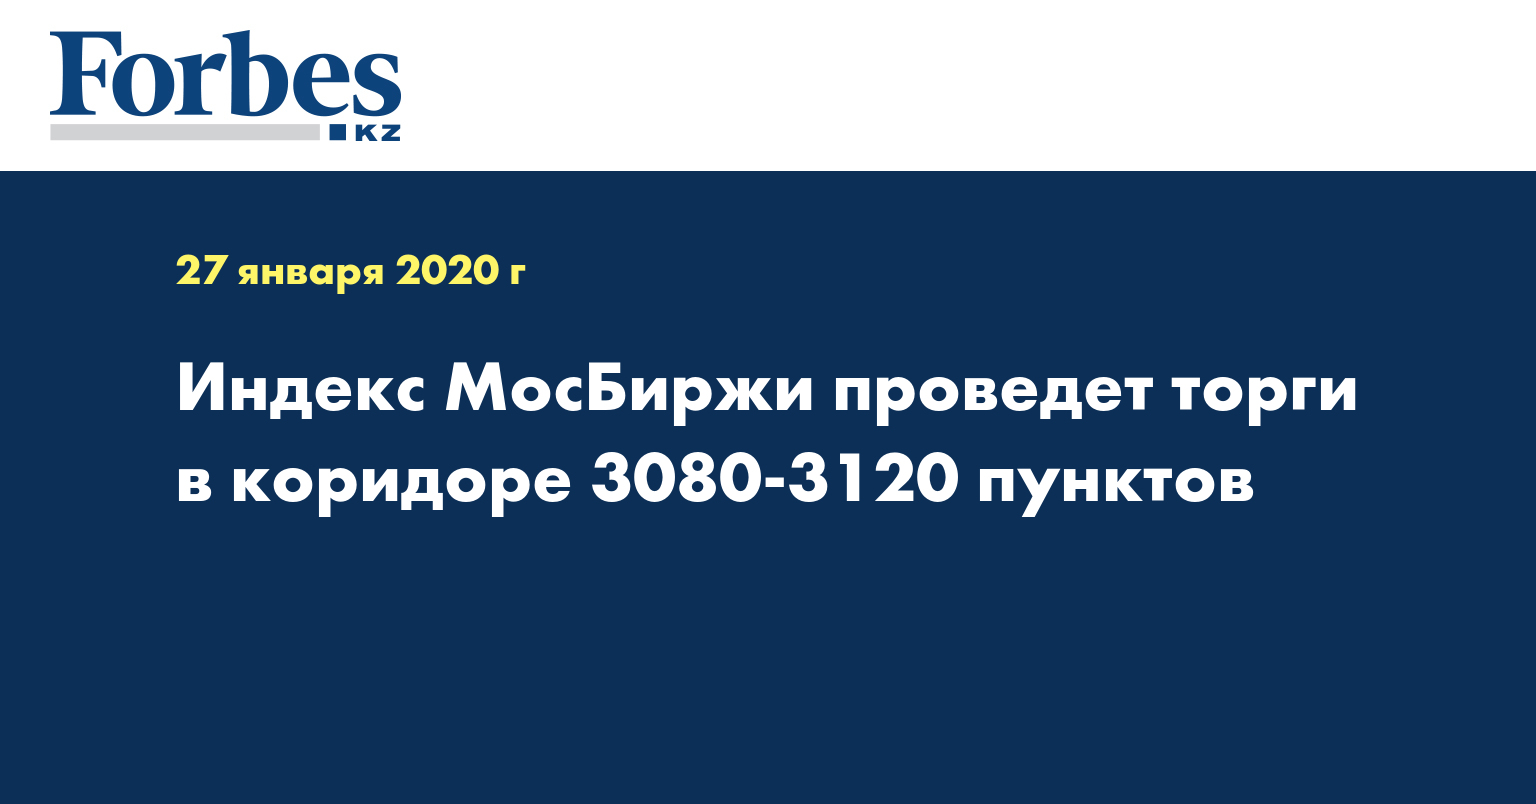 Индекс МосБиржи проведет торги в коридоре 3080-3120 пунктов